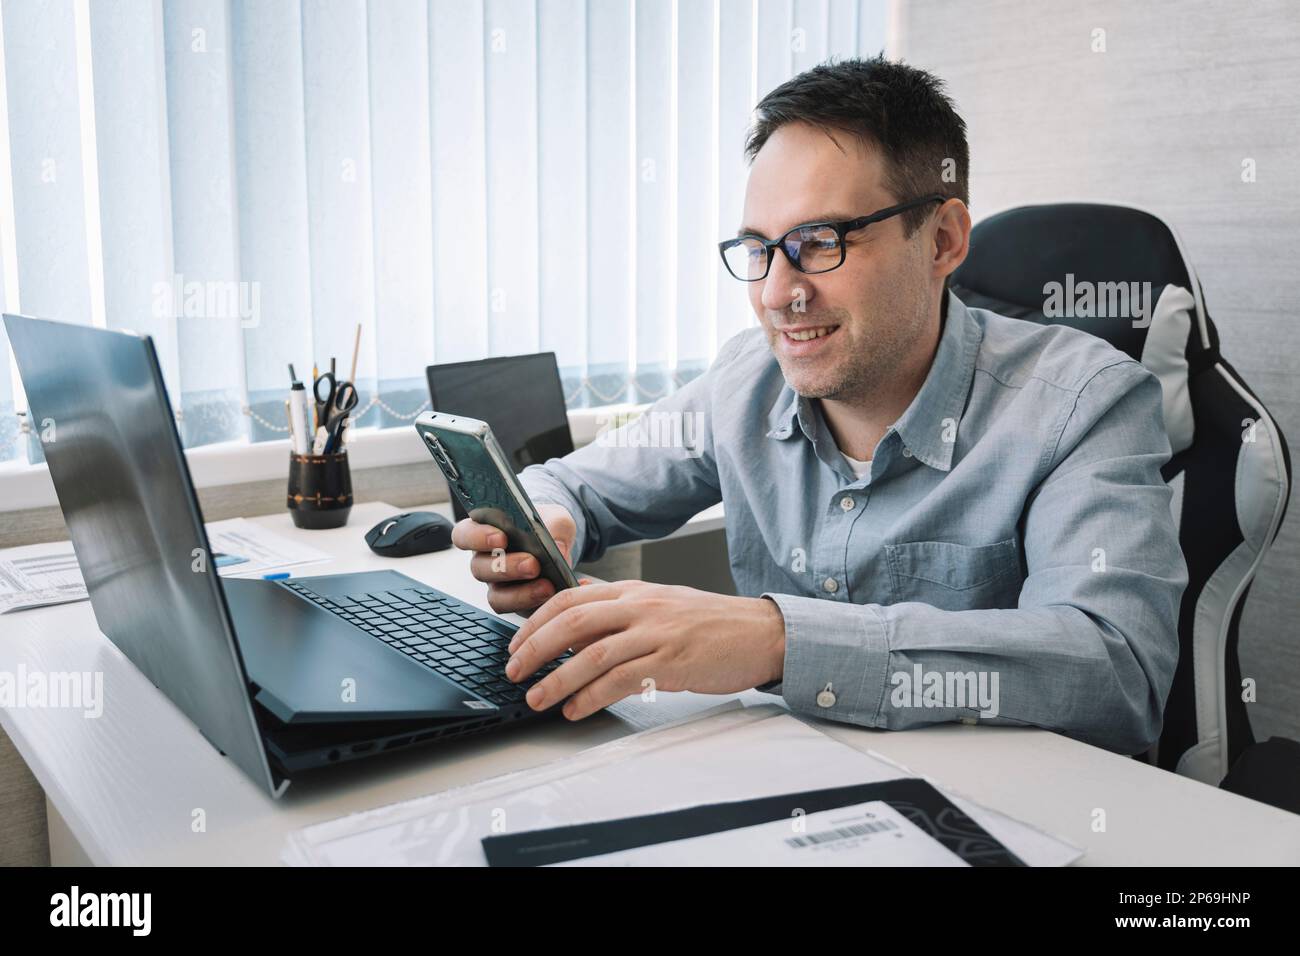 Moderne Technik, Lifestyle, gute Nachrichten. Ein Mann sitzt am Arbeitsplatz mit einem Laptop und nutzt ein Smartphone lächelt, liest angenehme sms, bekommt ein Angebot, chattet online Stockfoto